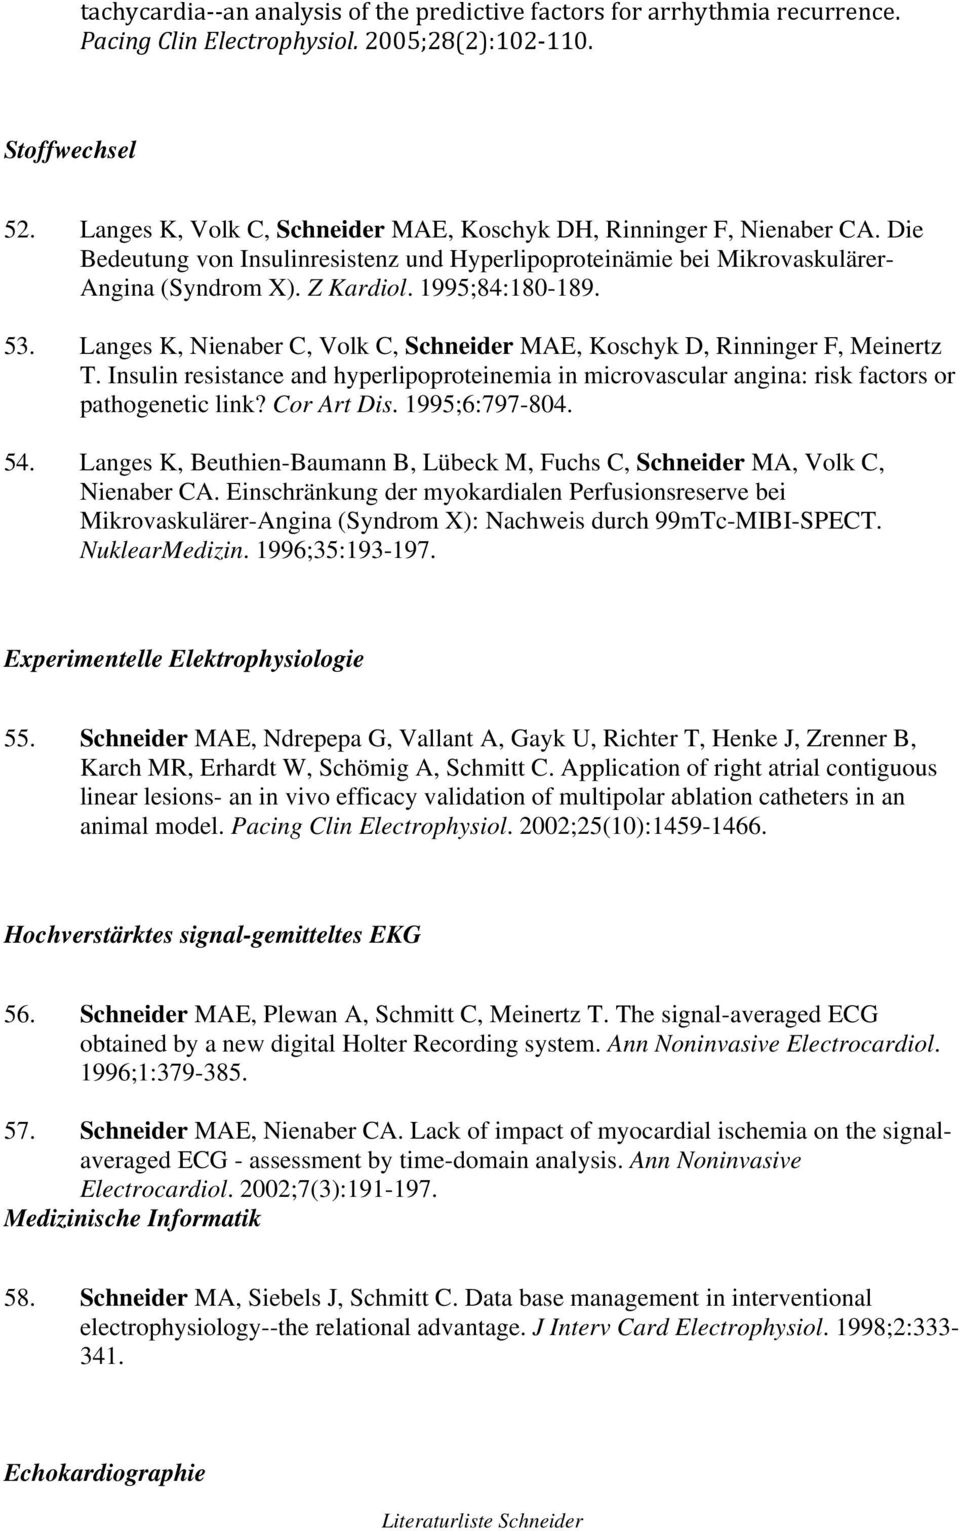 53. Langes K, Nienaber C, Volk C, Schneider MAE, Koschyk D, Rinninger F, Meinertz T. Insulin resistance and hyperlipoproteinemia in microvascular angina: risk factors or pathogenetic link?